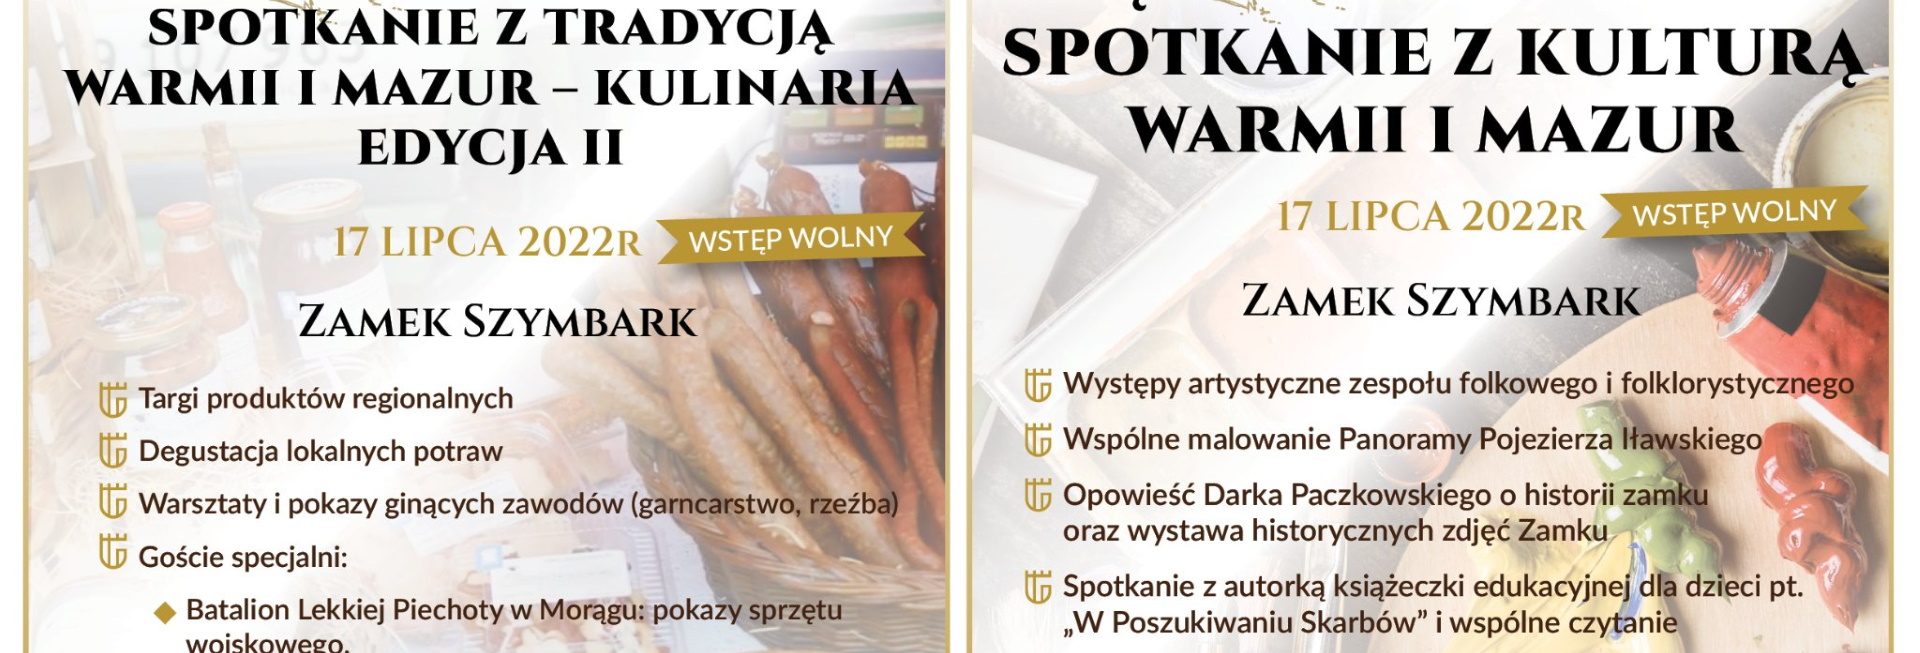 Plakat graficzny zapraszający do Zamku w Szymbarku na Międzypokoleniowe Spotkania z Tradycją Warmii i Mazur - Kulinaria Szymbark 2022.  